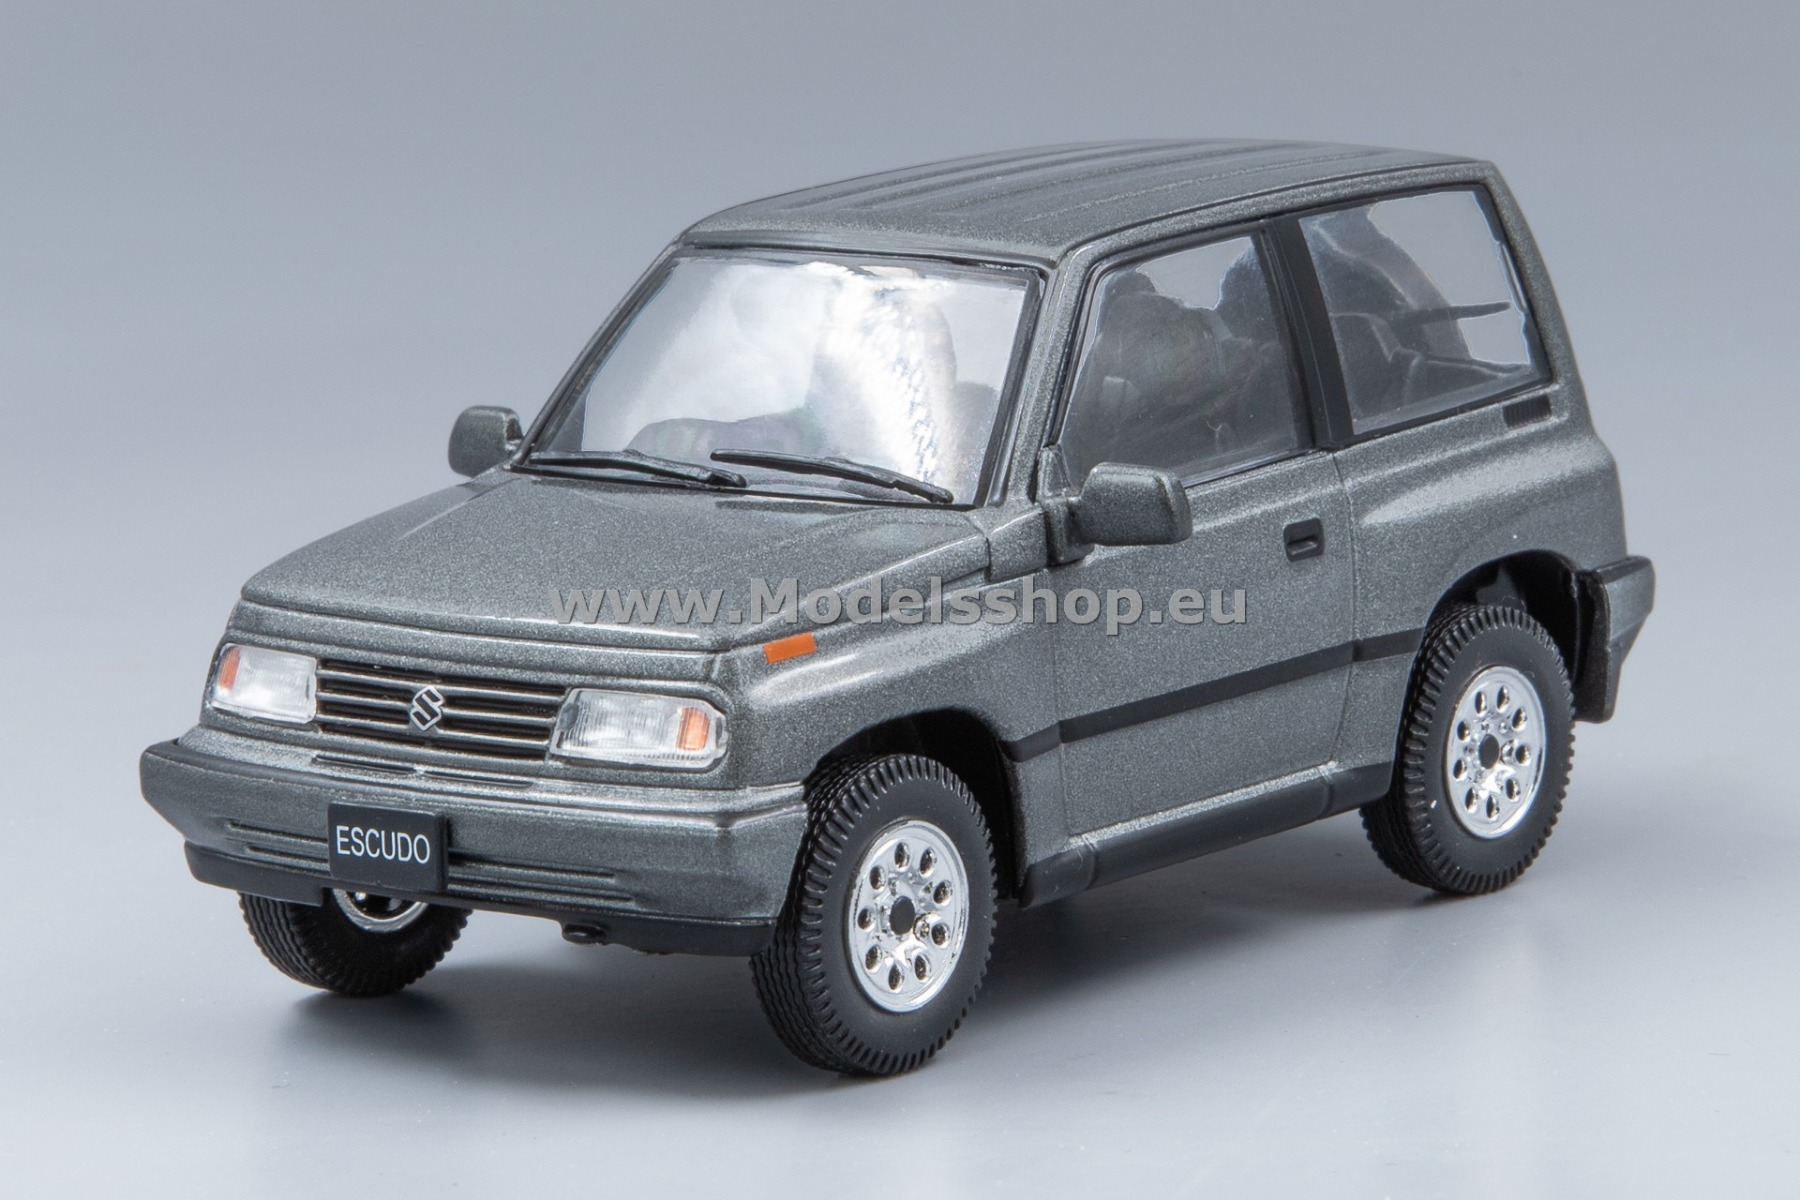 Suzuki Escudo / Vitara, 1992, RHD /grey -metallic/